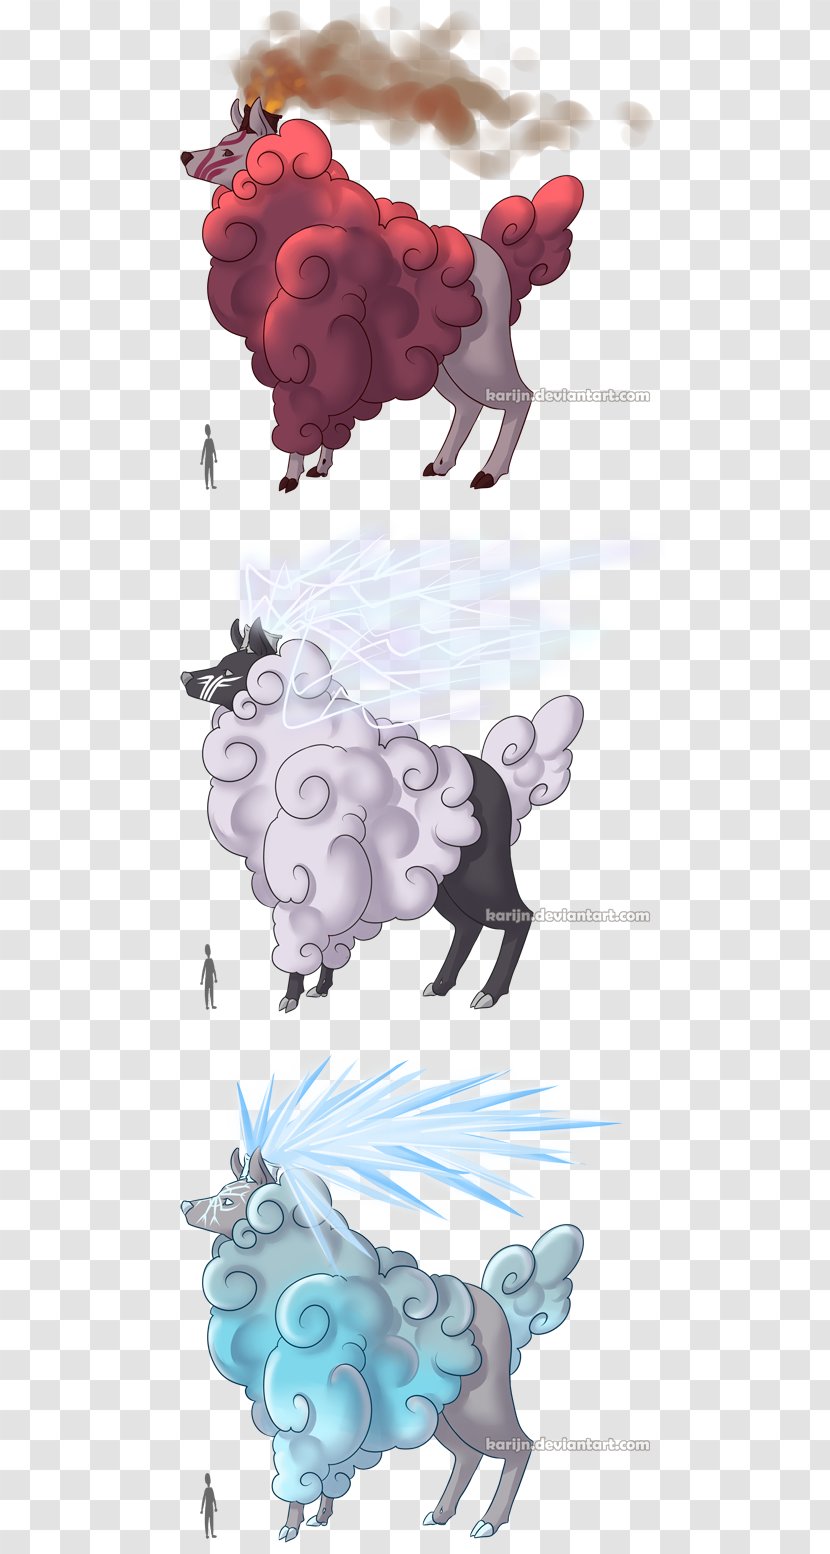 Work Of Art Illustration Design DeviantArt - Mythical Creature - Sheep Breeders Transparent PNG